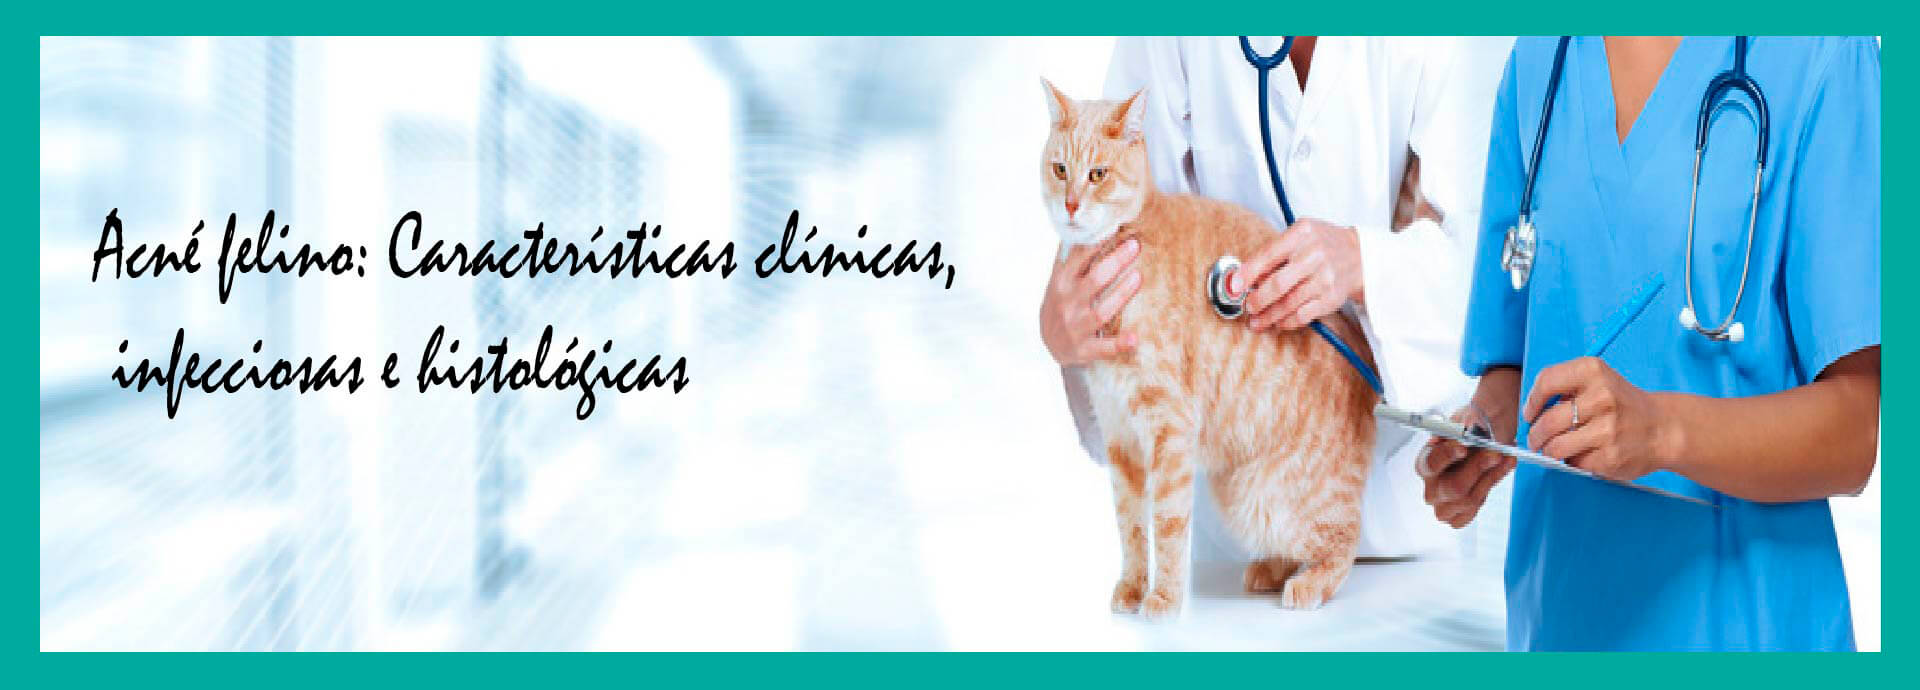 Acné felino: Características Clínicas, Infecciosas e Histológicas